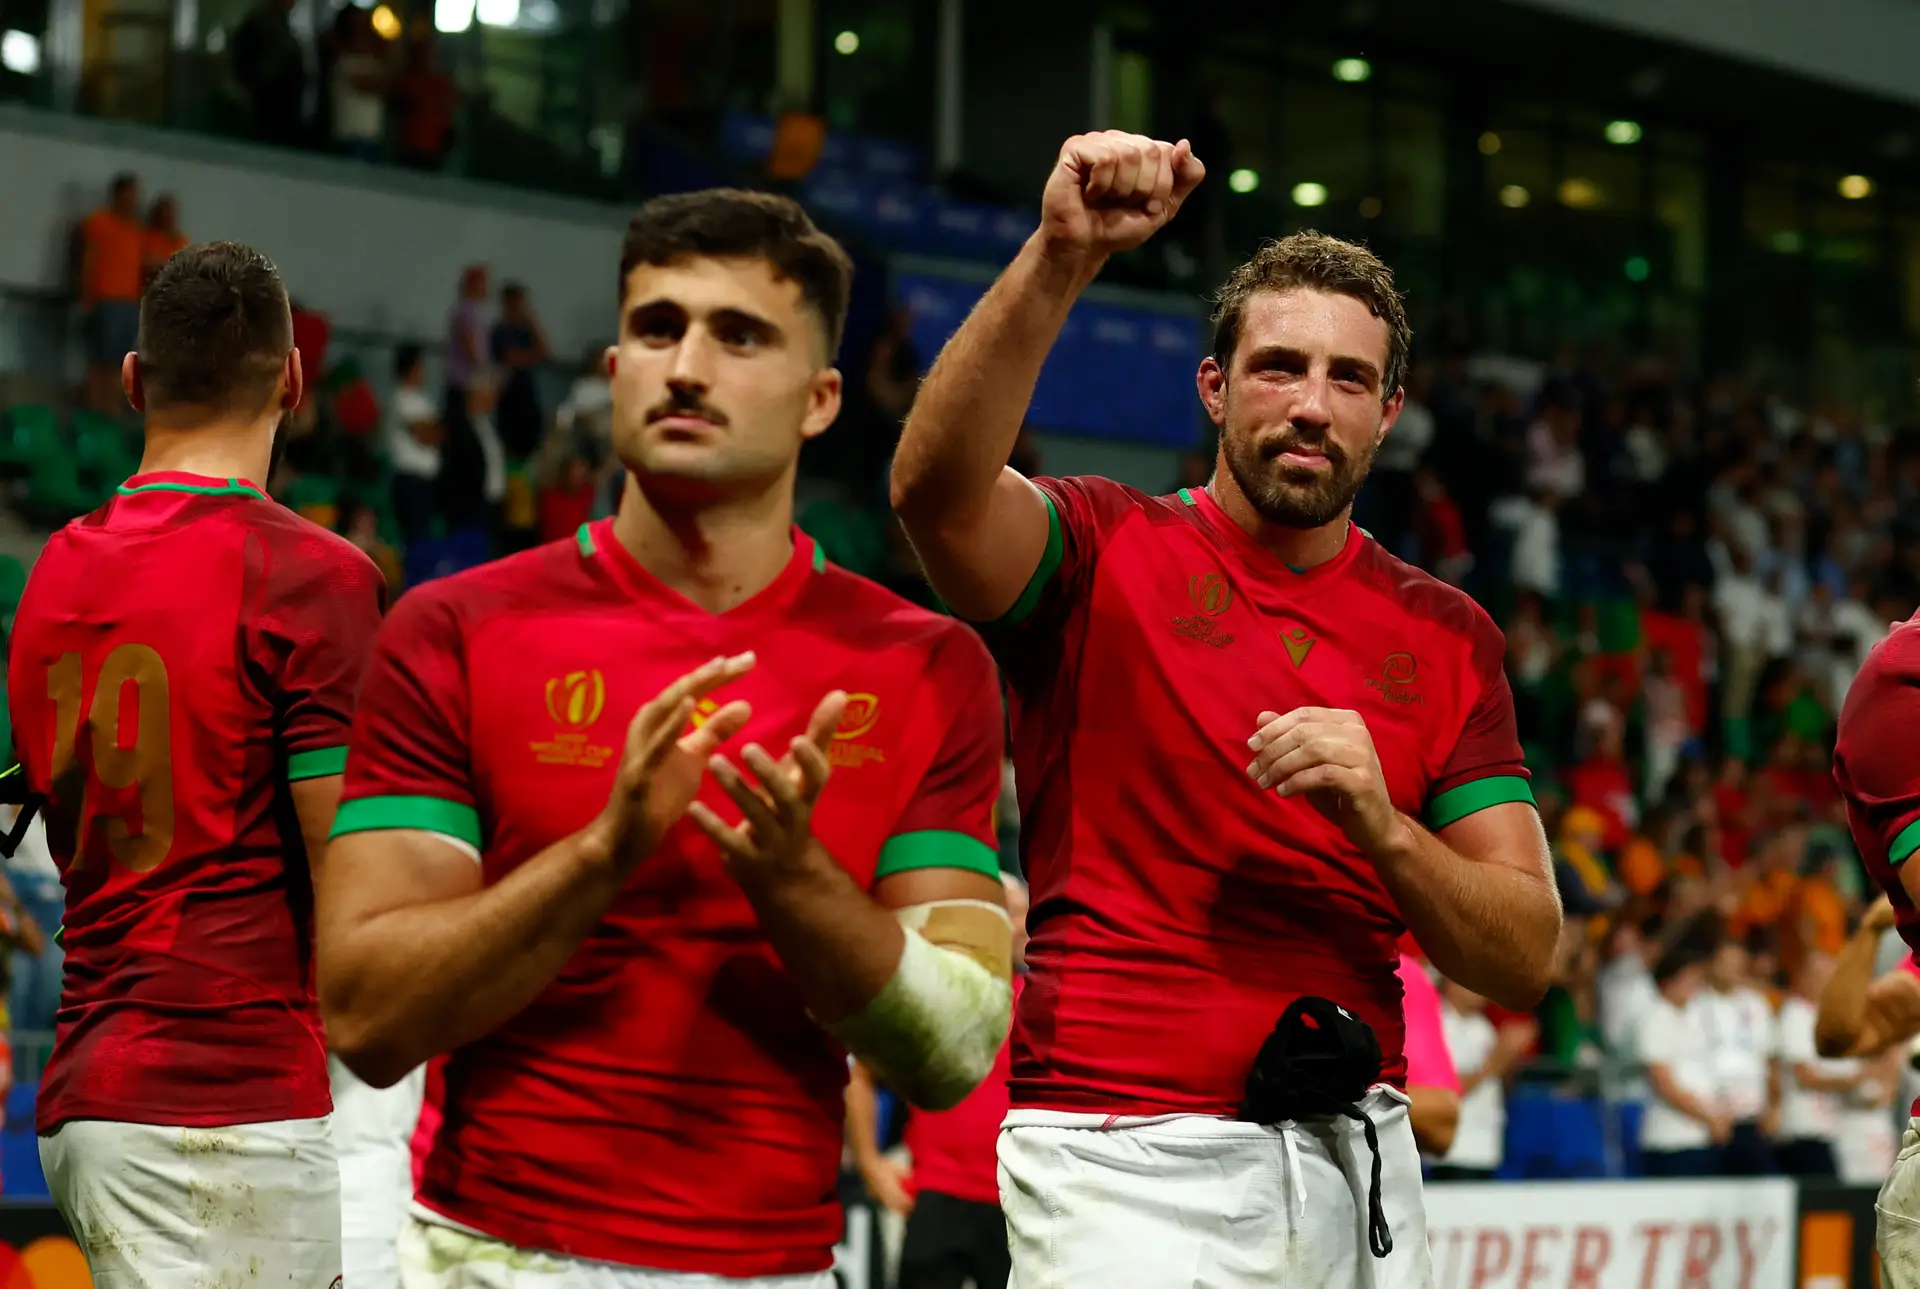 Portugal empata pela primeira vez no Mundial de râguebi - Renascença